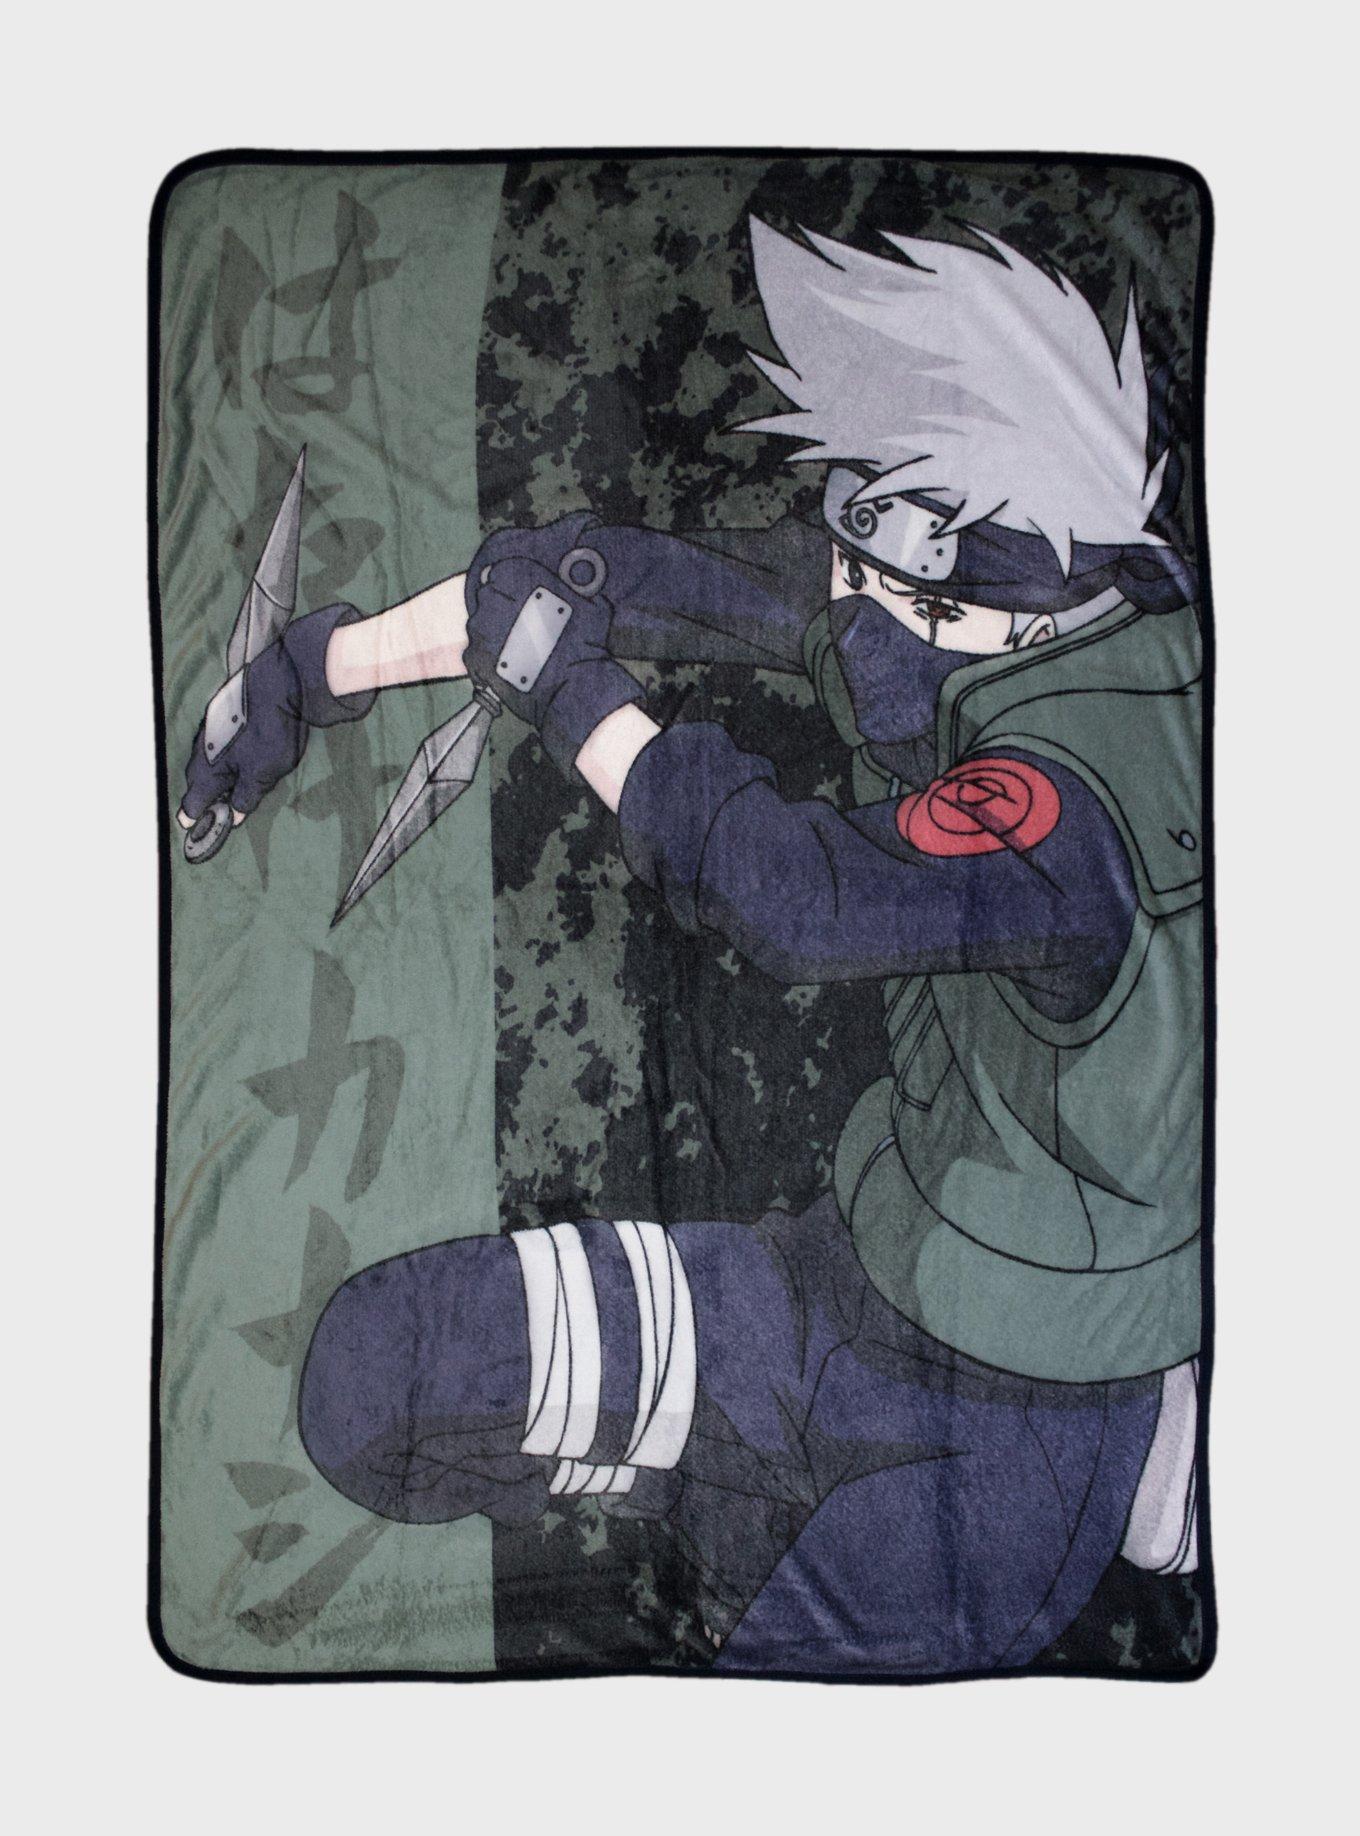 Naruto Kakashi Hatake Anime Fleece Throw Blanket Official Naruto Throw Blanket Naruto Blanket Kakashi Sensei Soft Blankets and Throws Measures 60 x 45 Inches